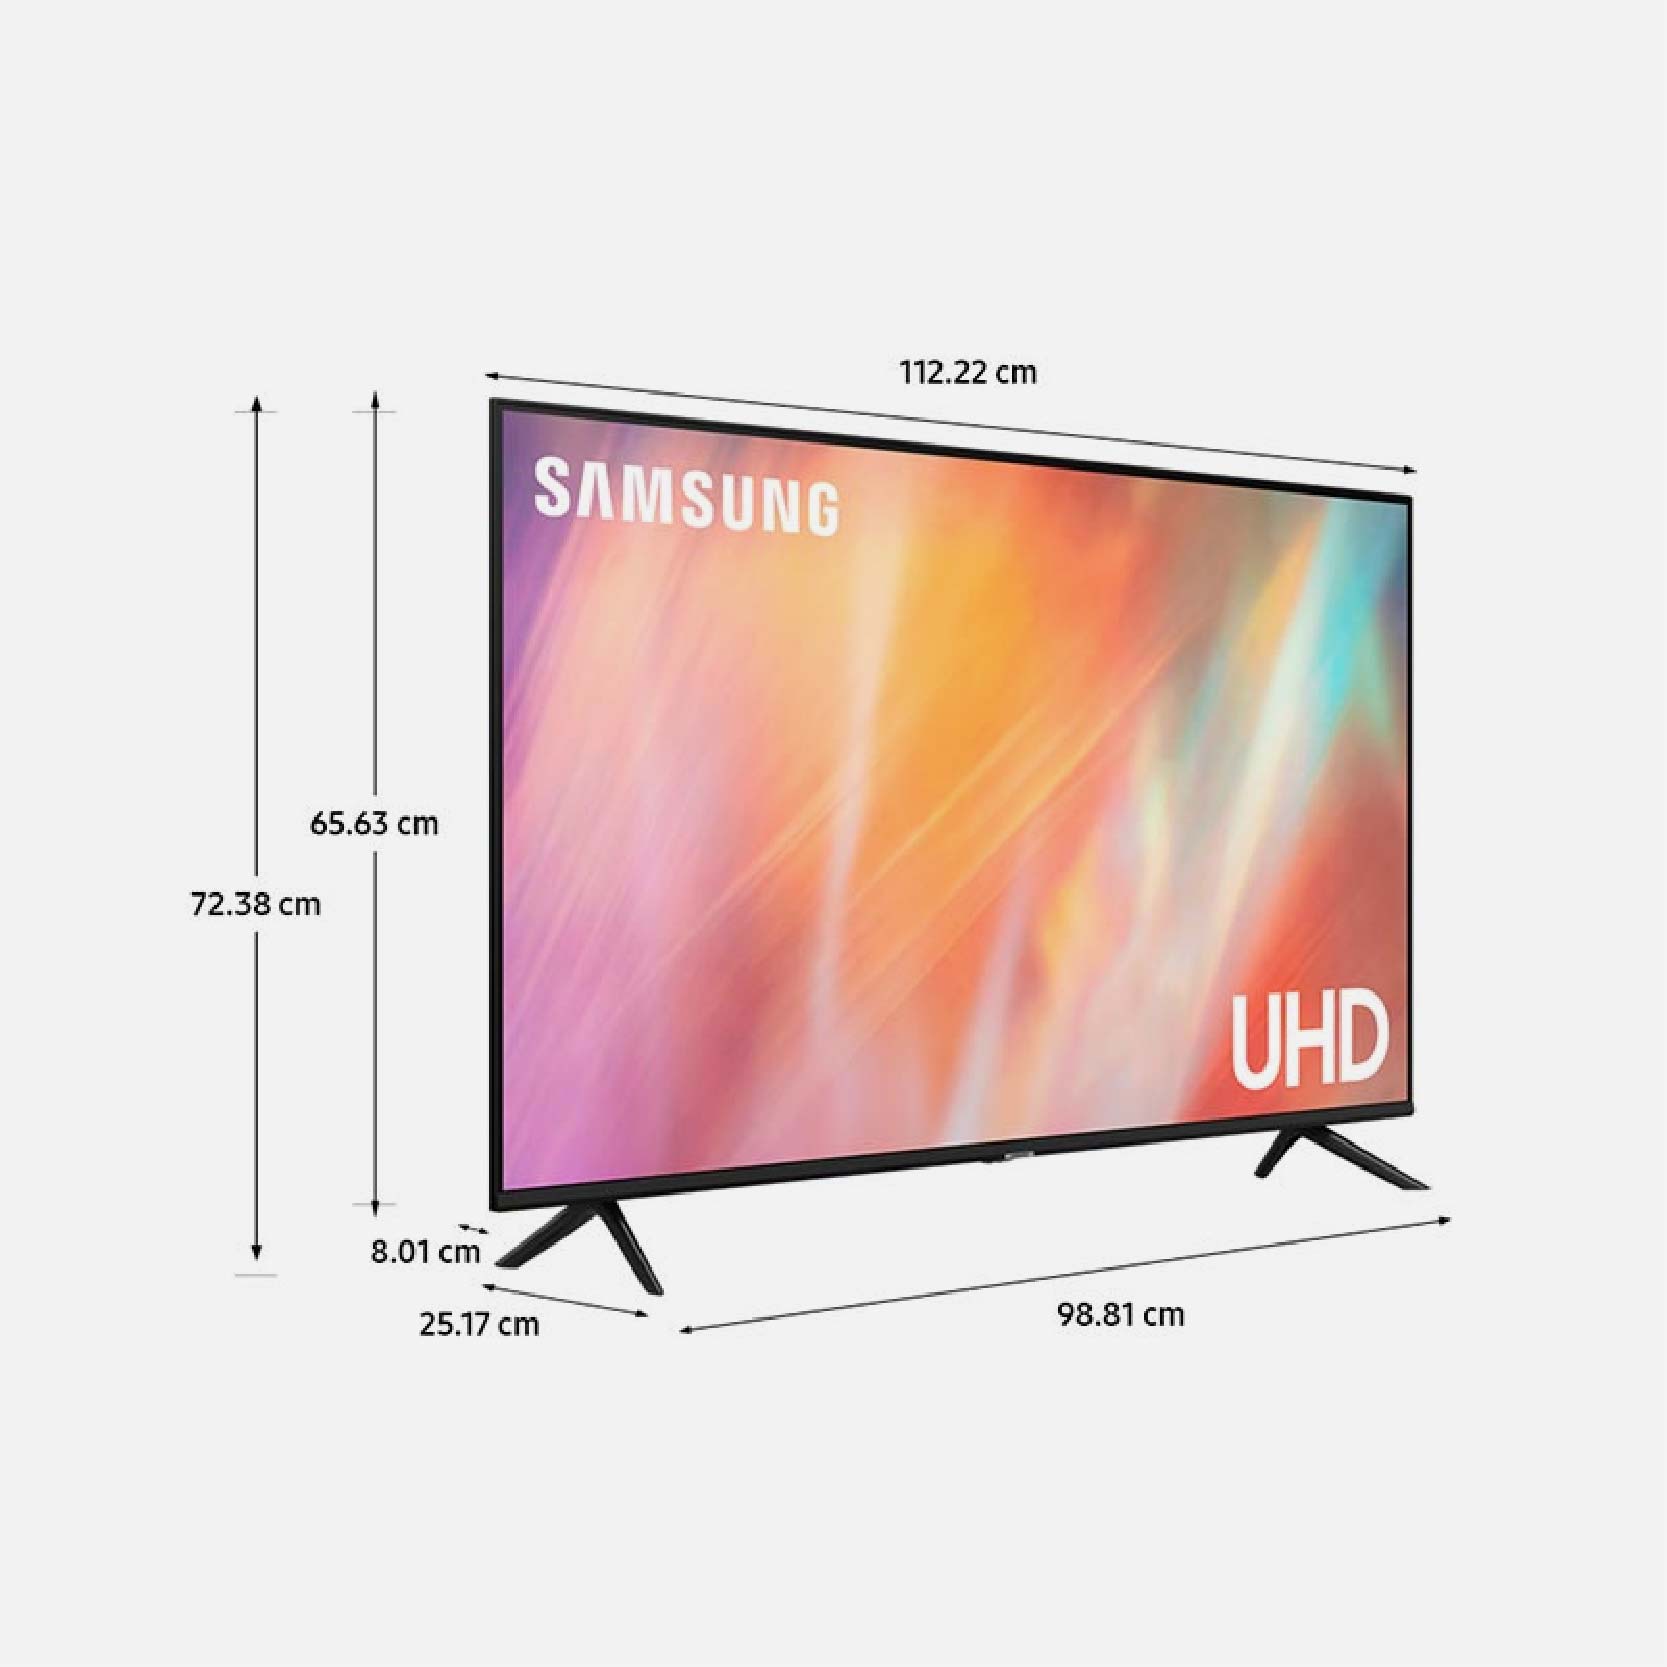 SAMSUNG SMART TV LED UHD 4K 50 UN50AU7090GXZS 1